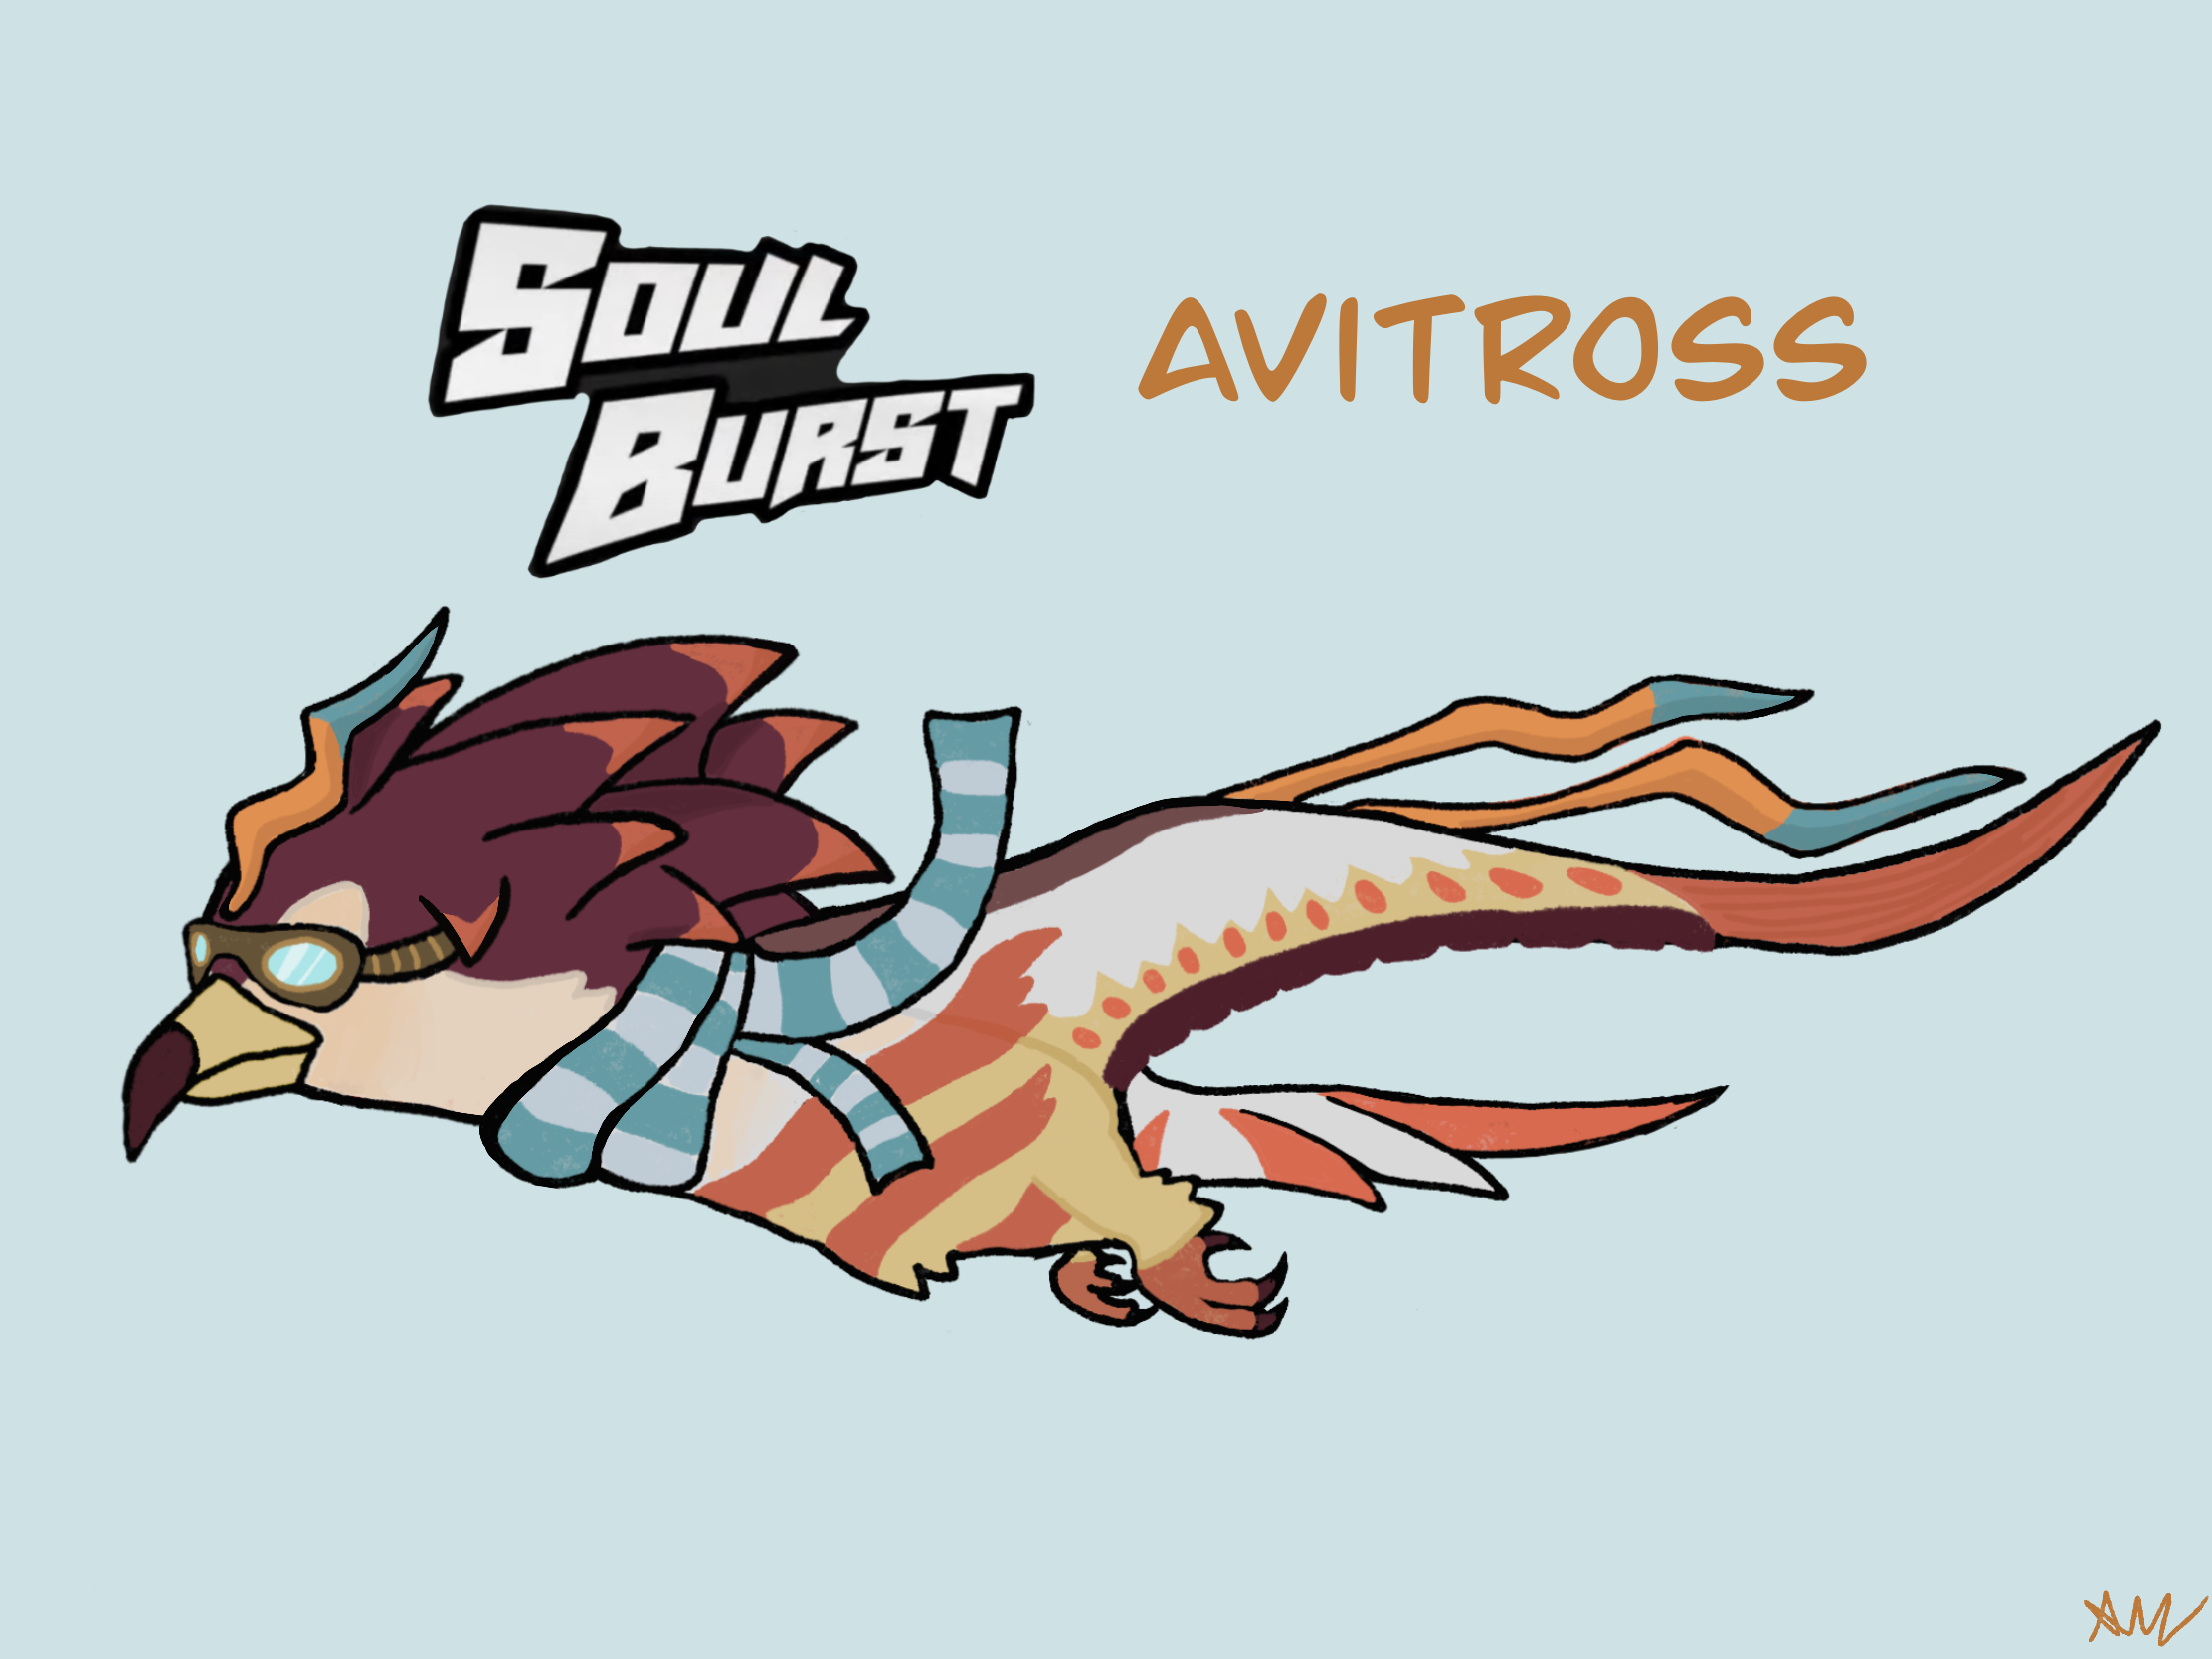 Soul burst Avitross concept